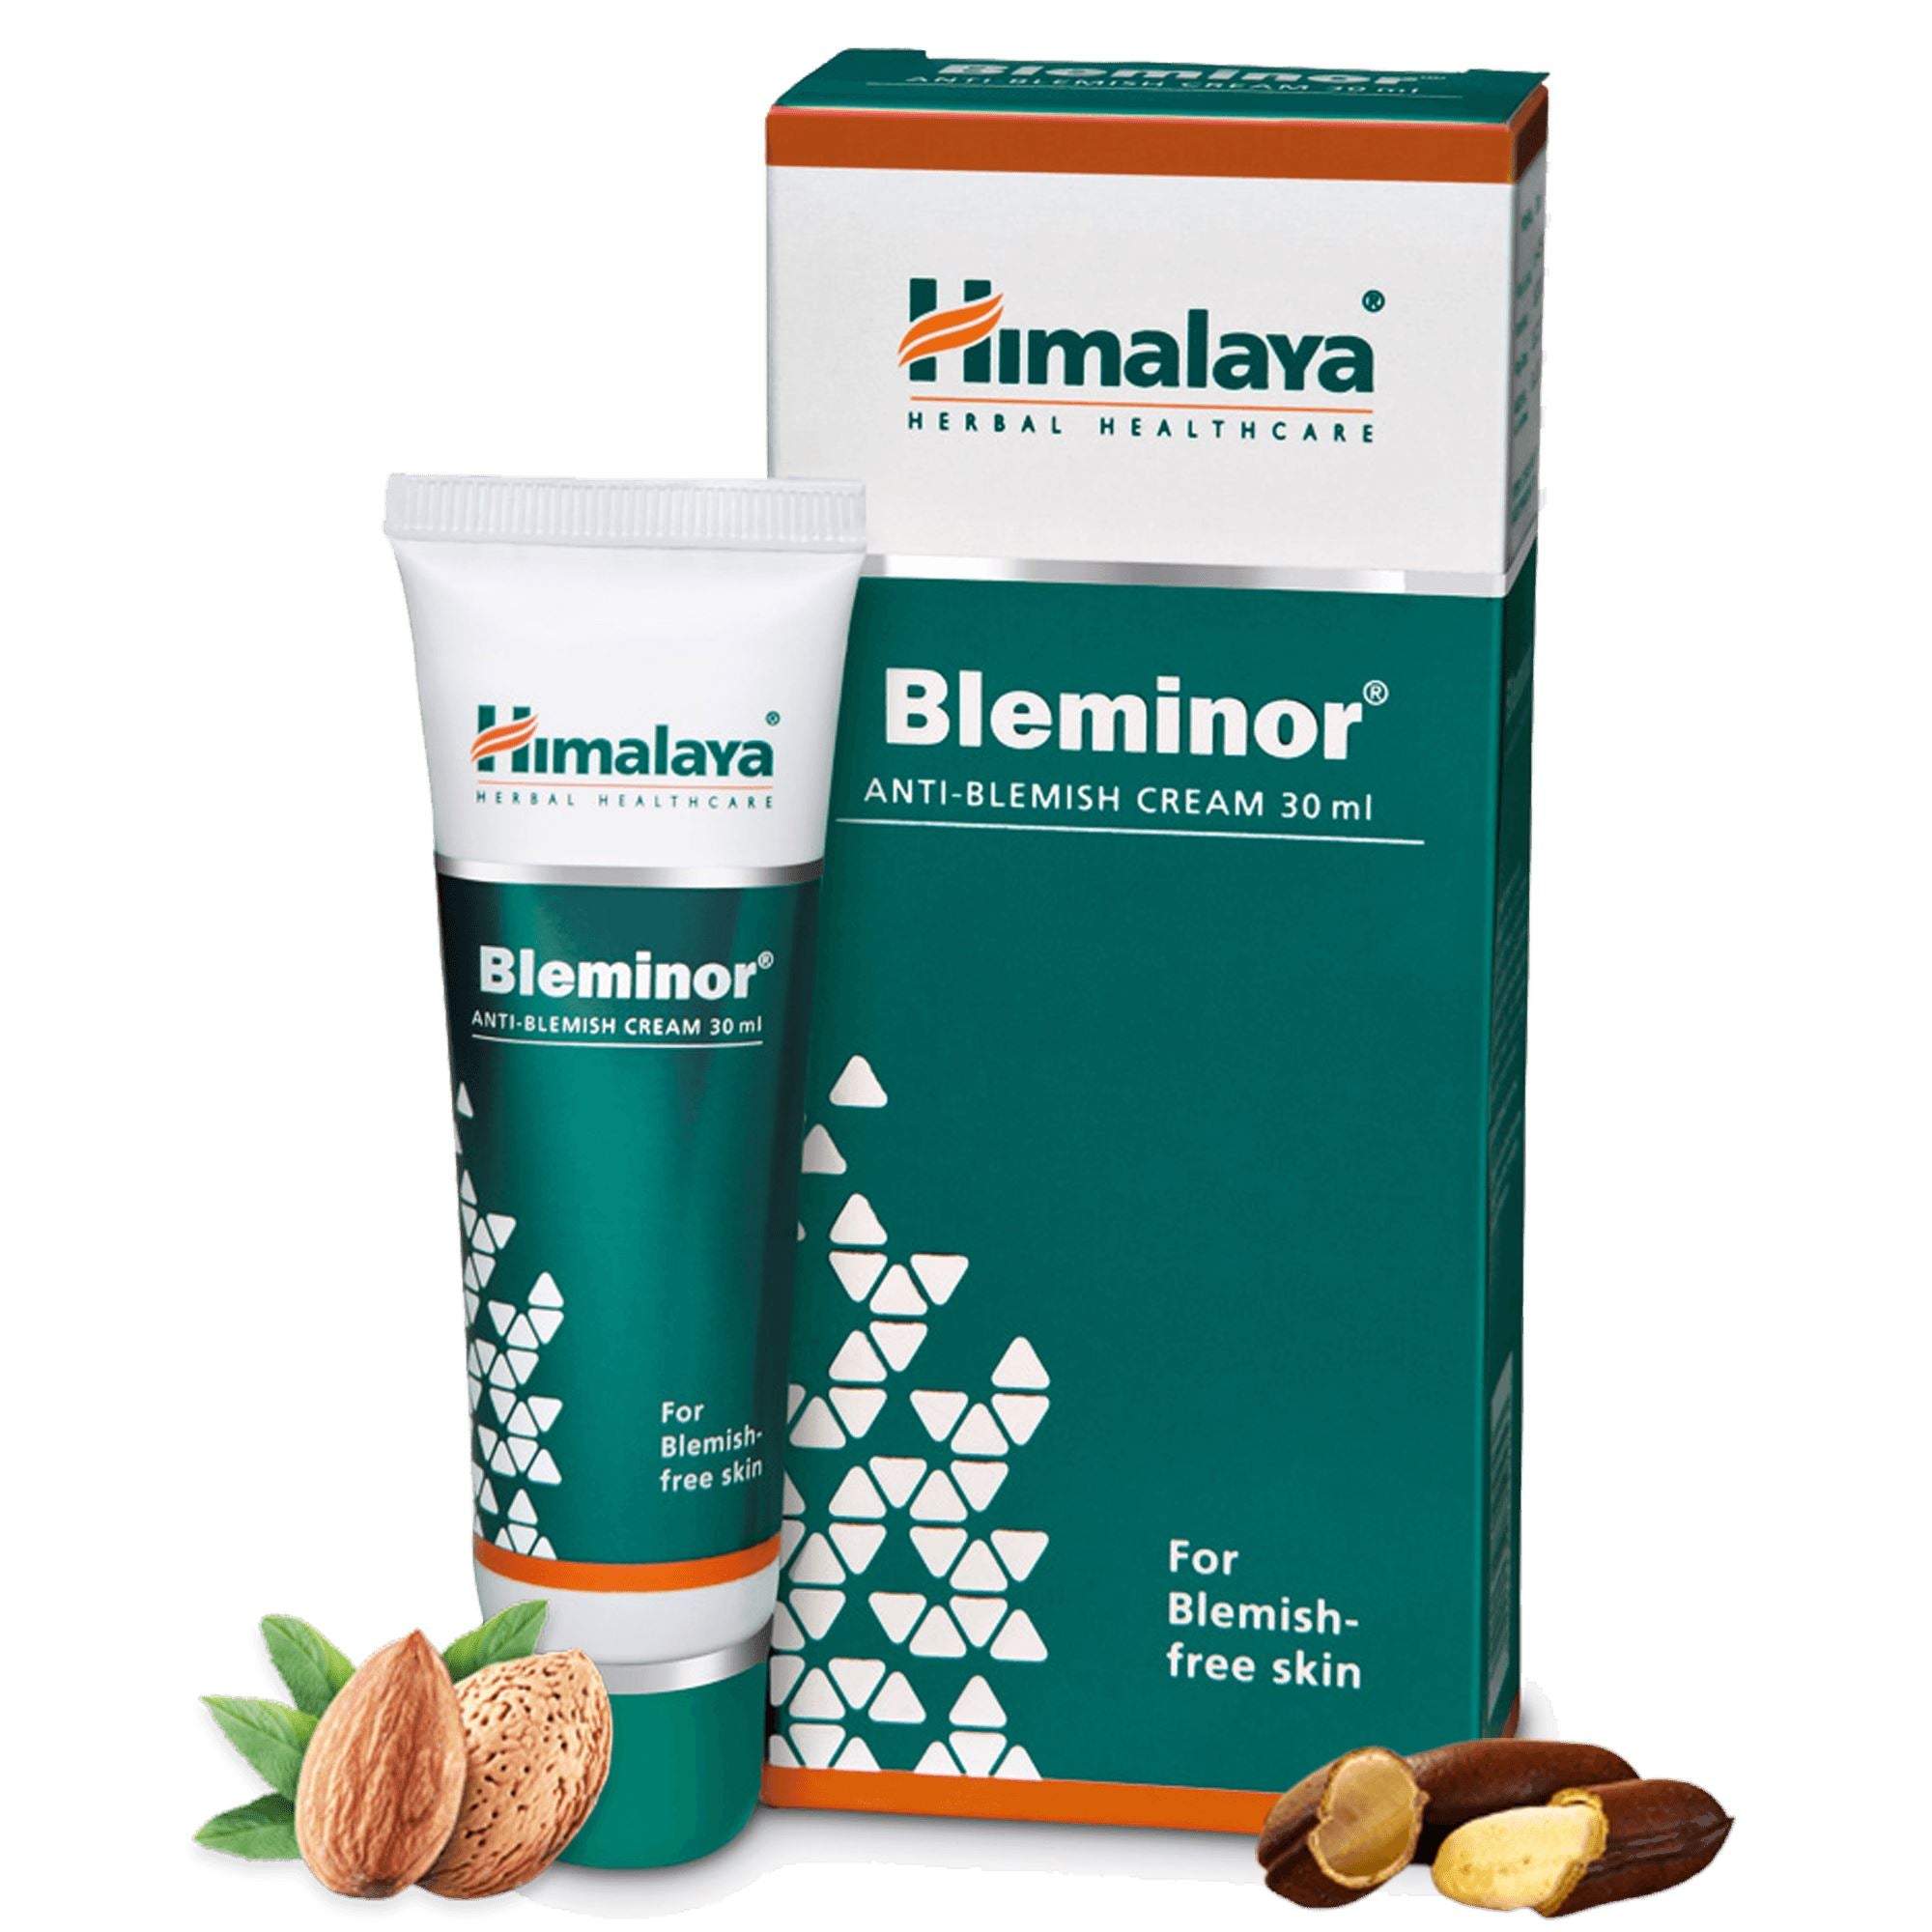 Himalaya Bleminor - For blemish-free skin